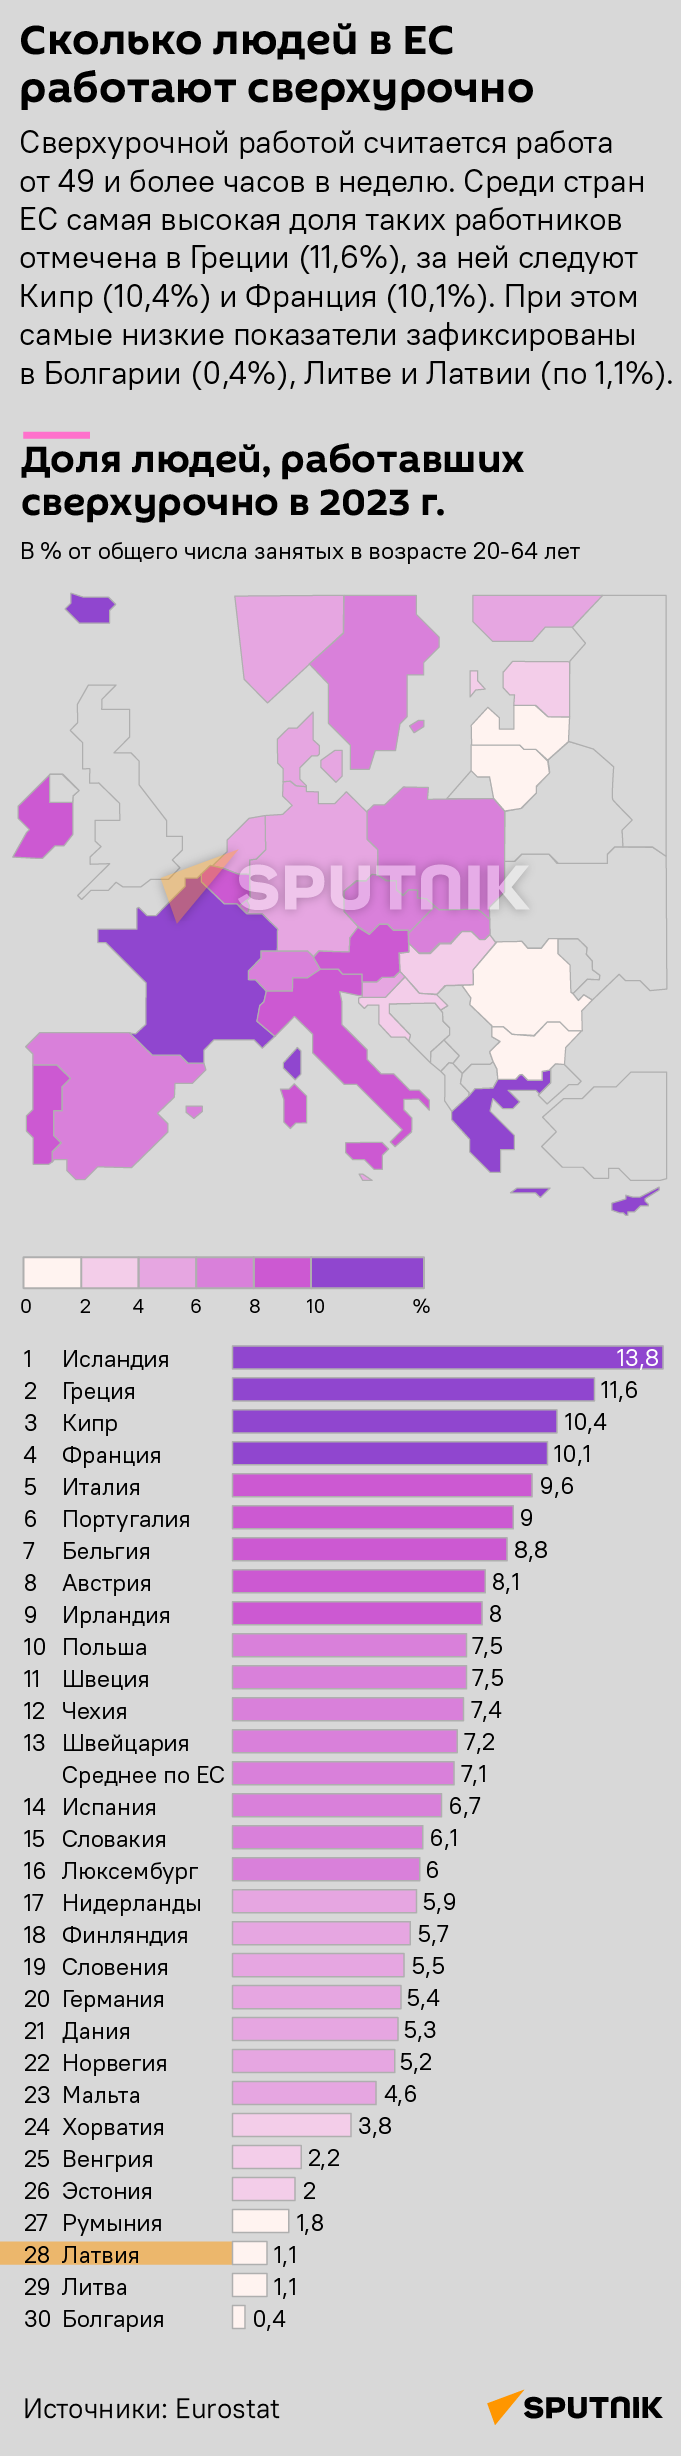 Сколько людей в ЕС работали сверхурочно в 2023 году  - Sputnik Латвия